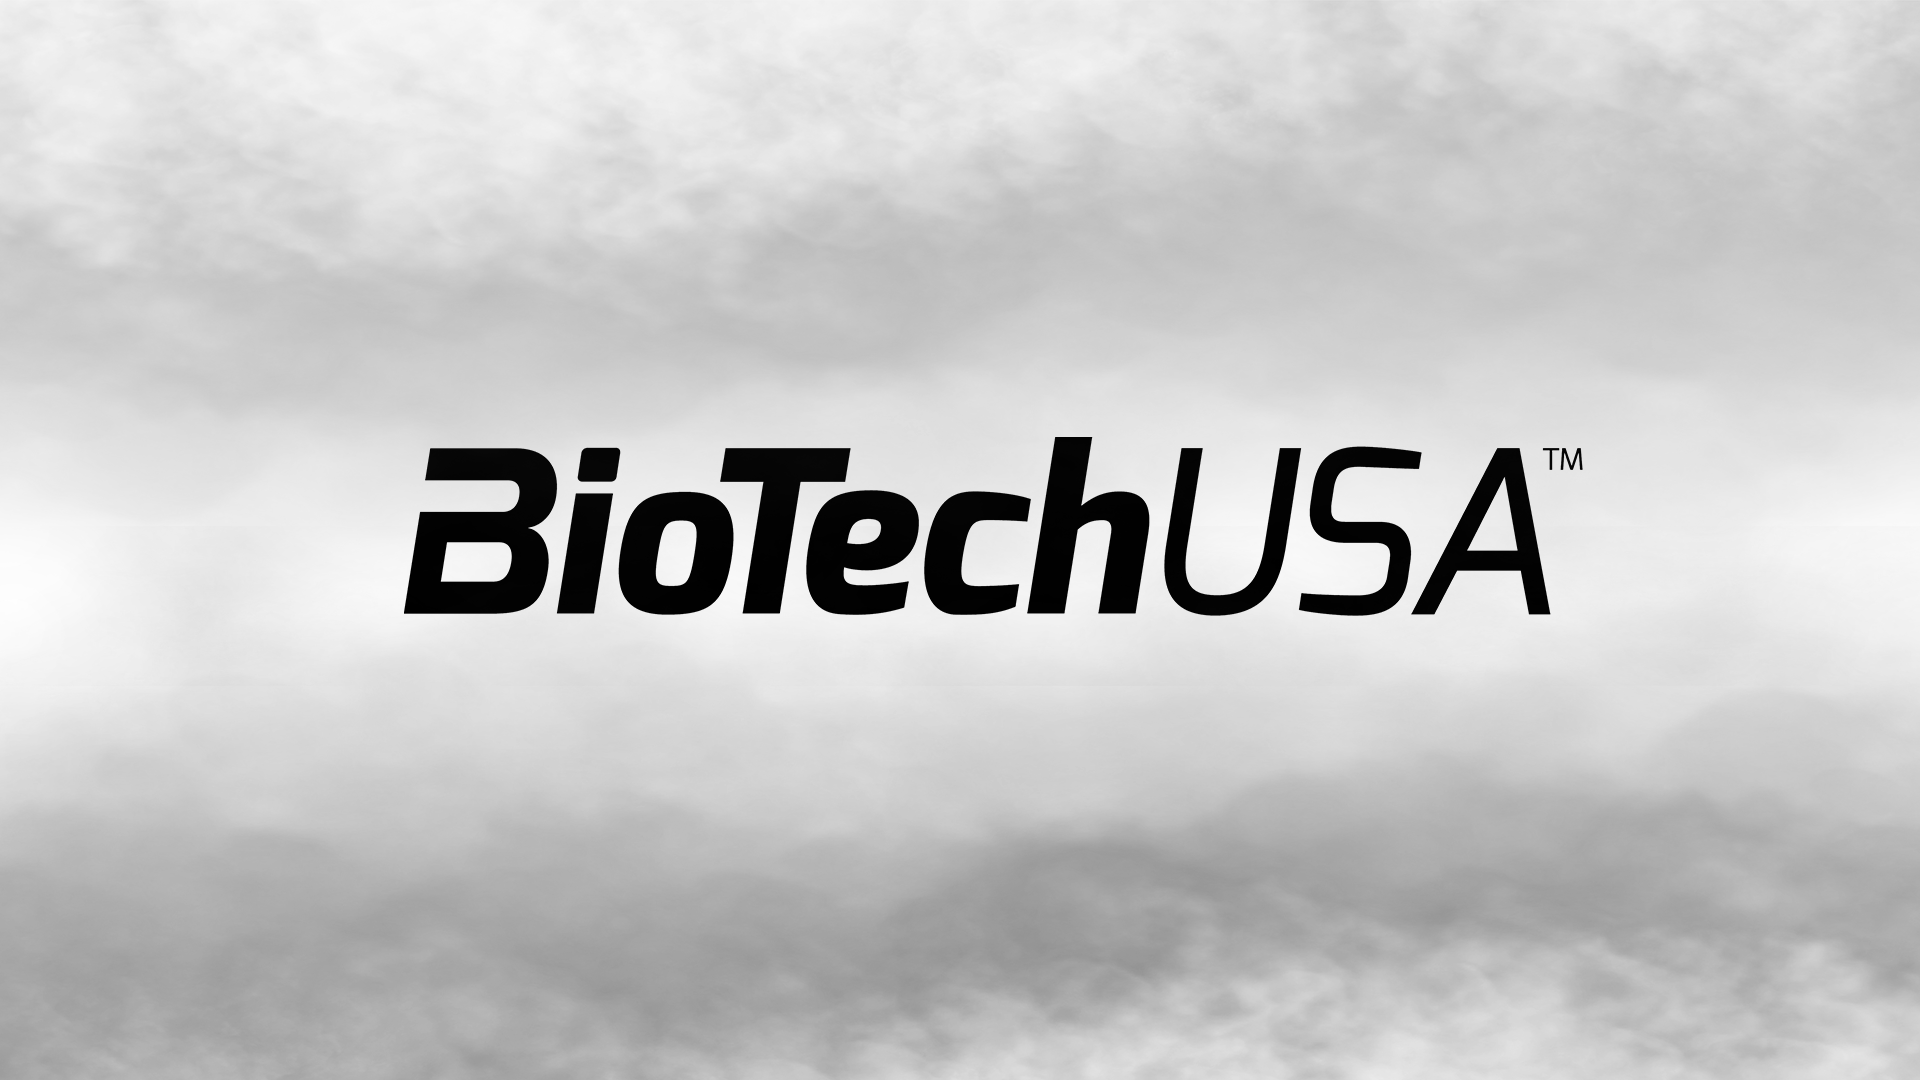 Bio Tech USA